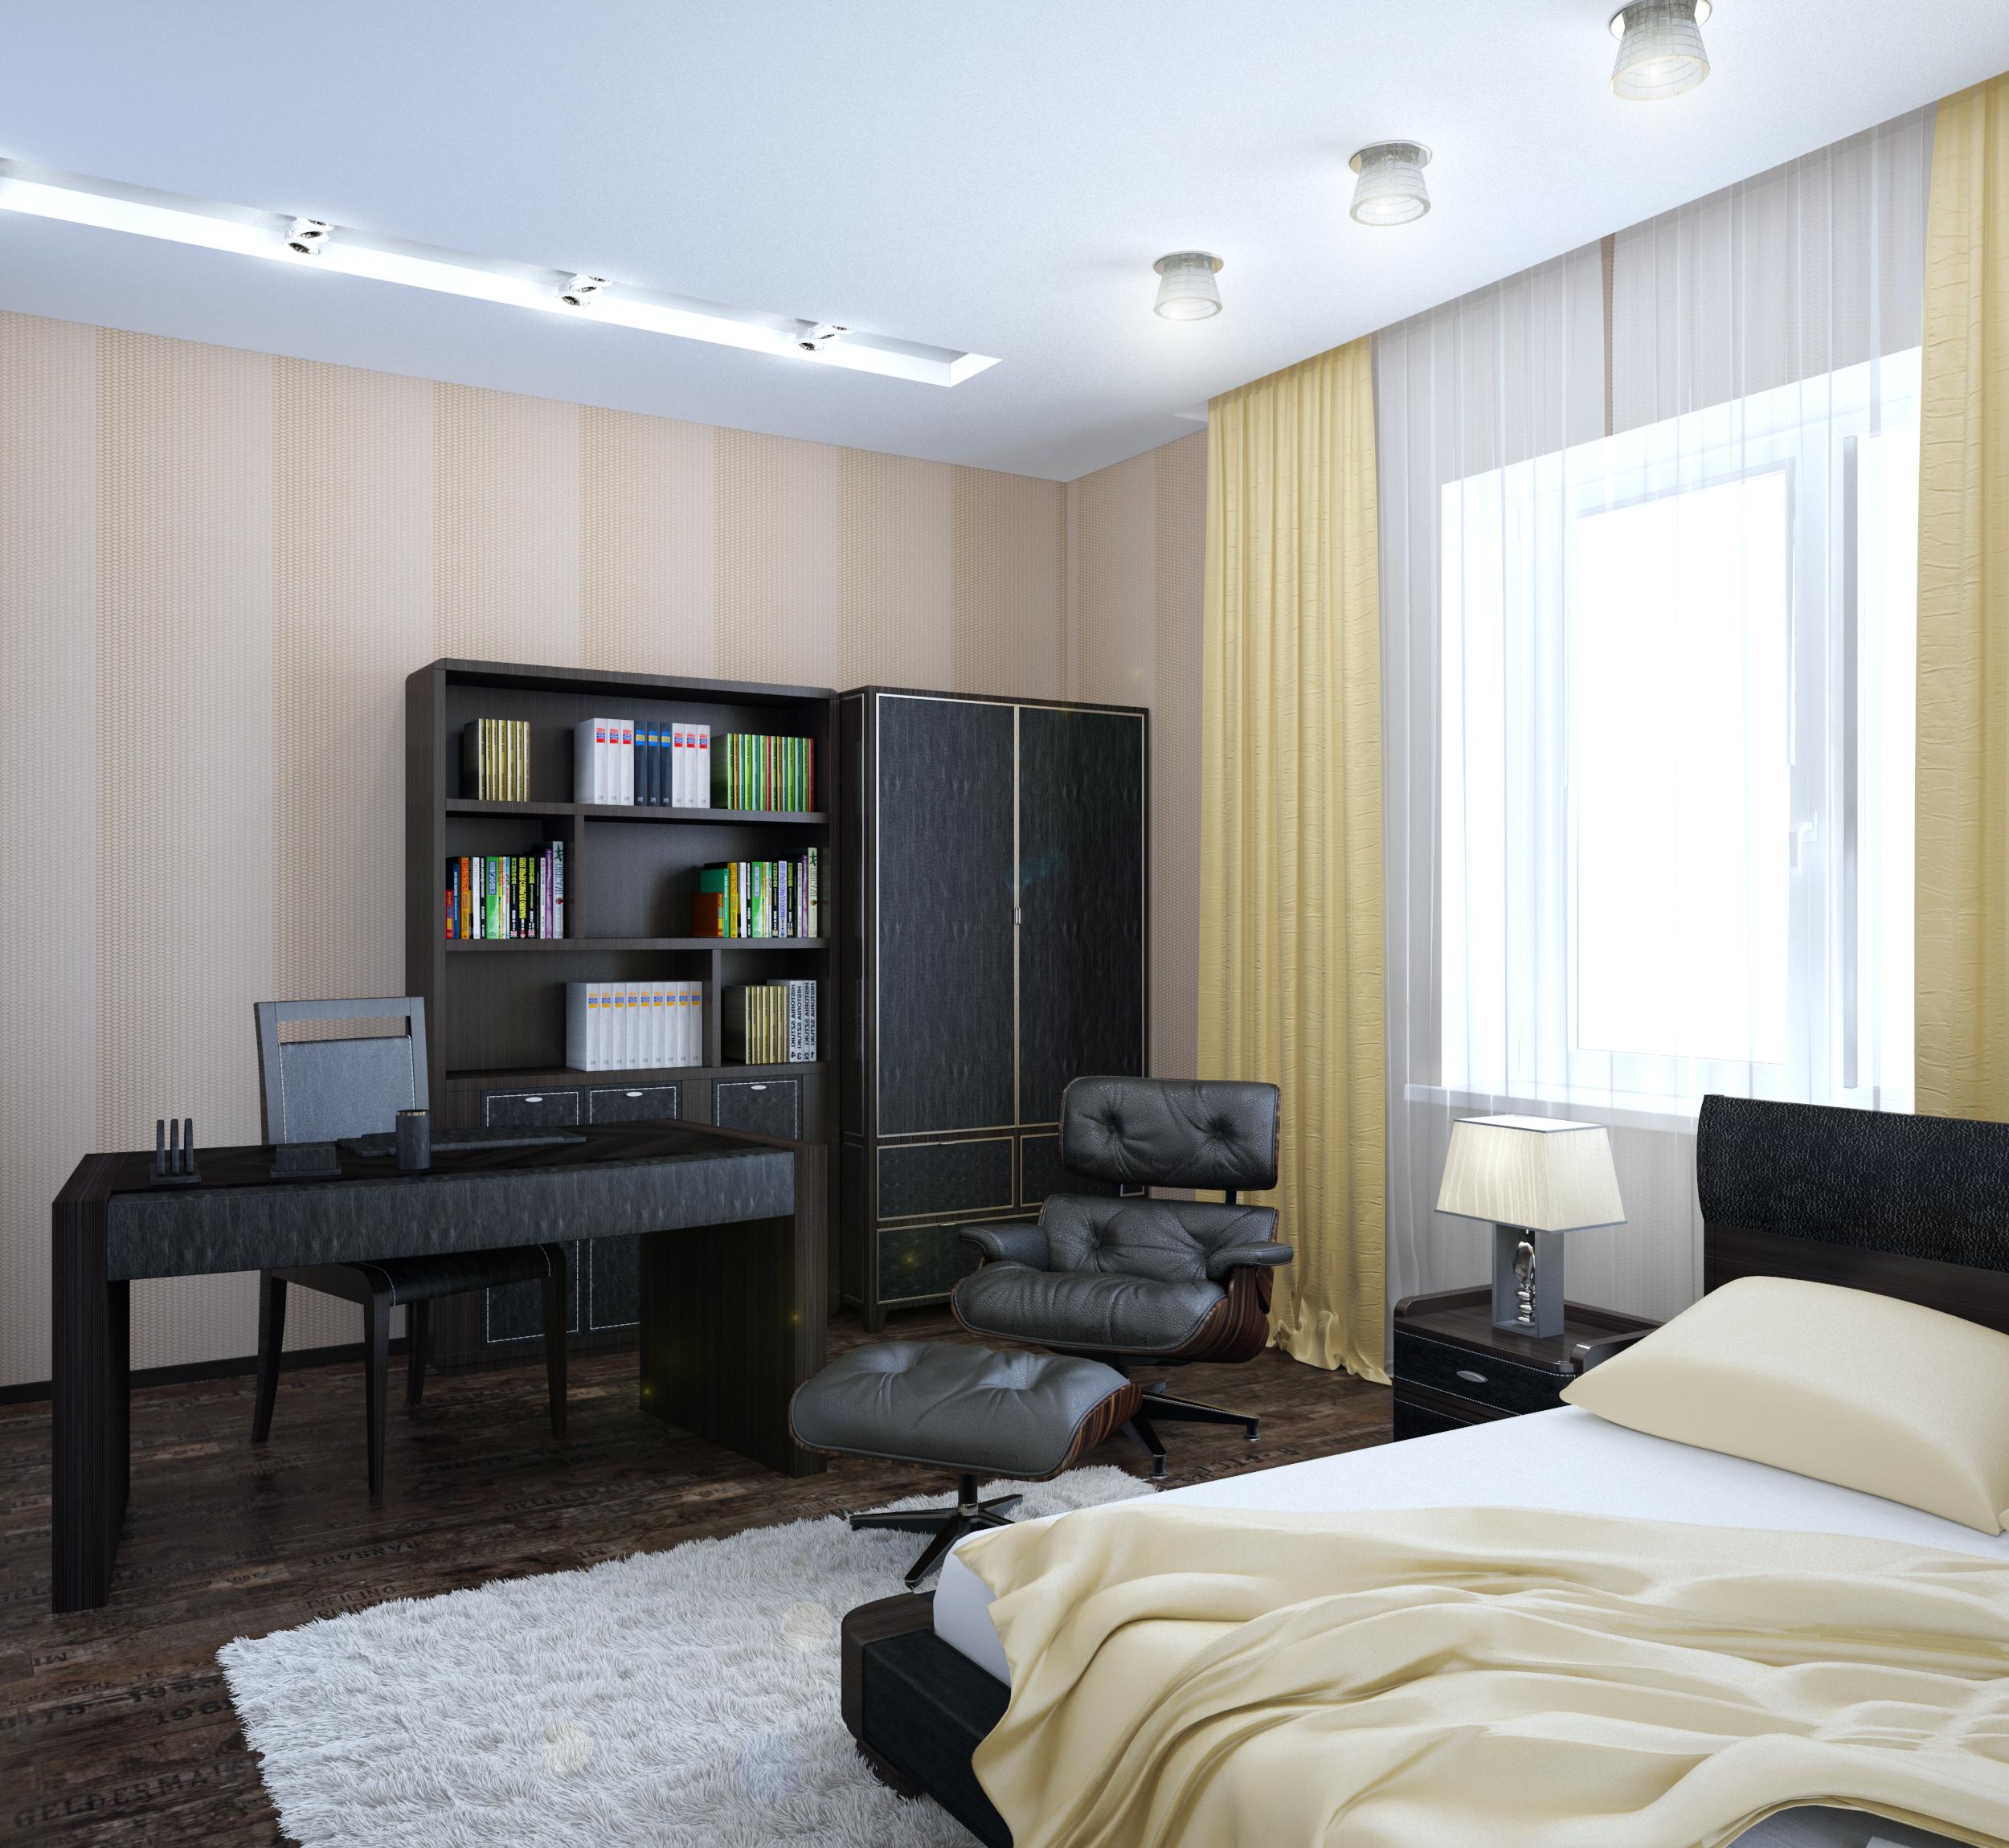 Интерьер спальни c рабочим местом, рейками с подсветкой, подсветкой настенной, подсветкой светодиодной, светильниками над кроватью и с подсветкой